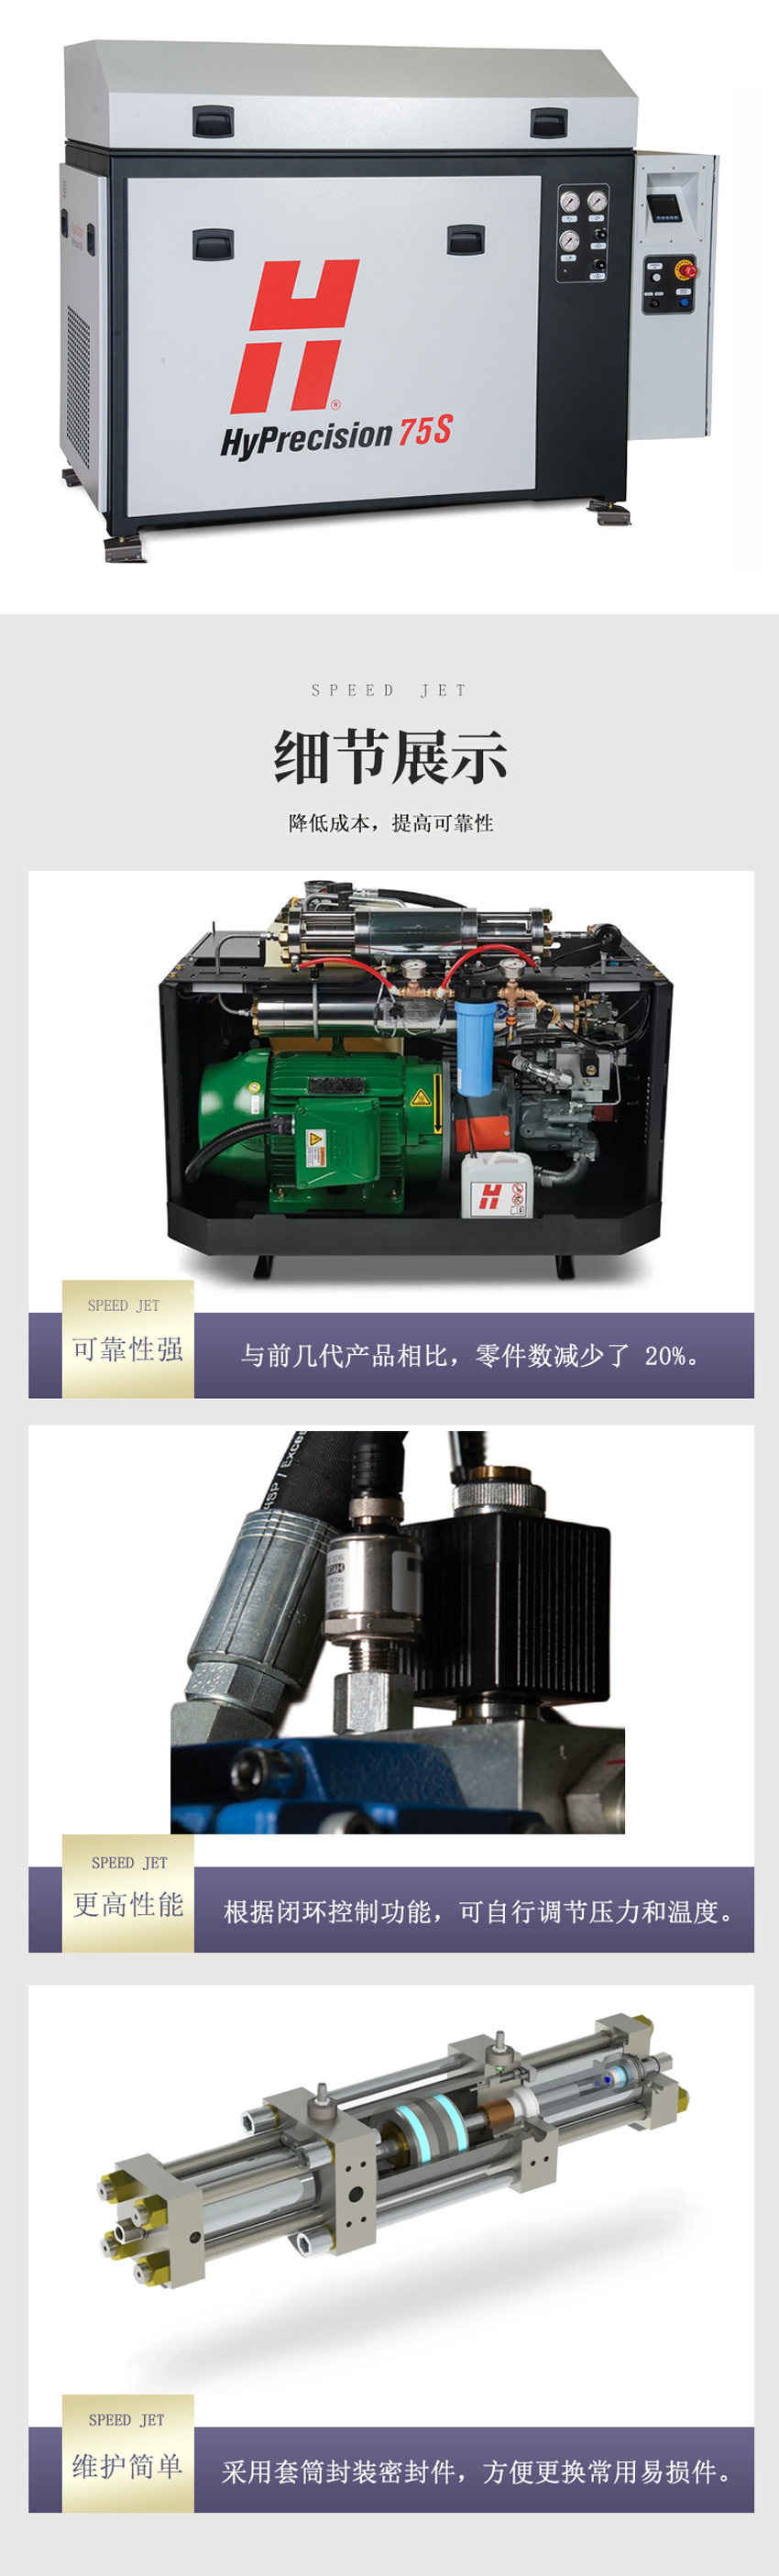 高压泵-1.jpg